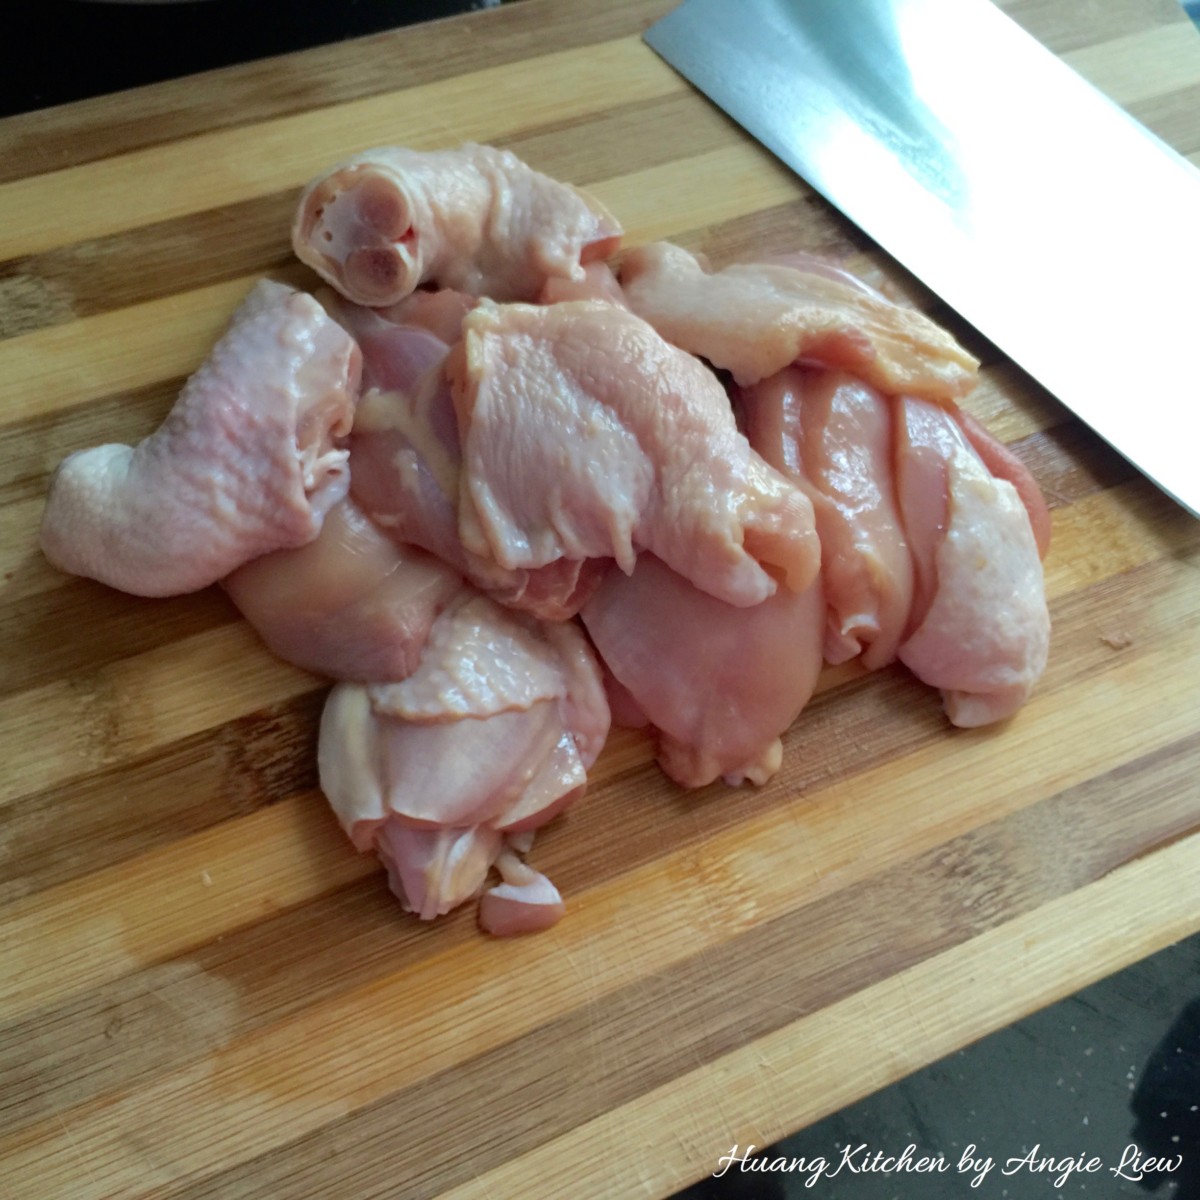 Cut deboned chicken meat into pieces.